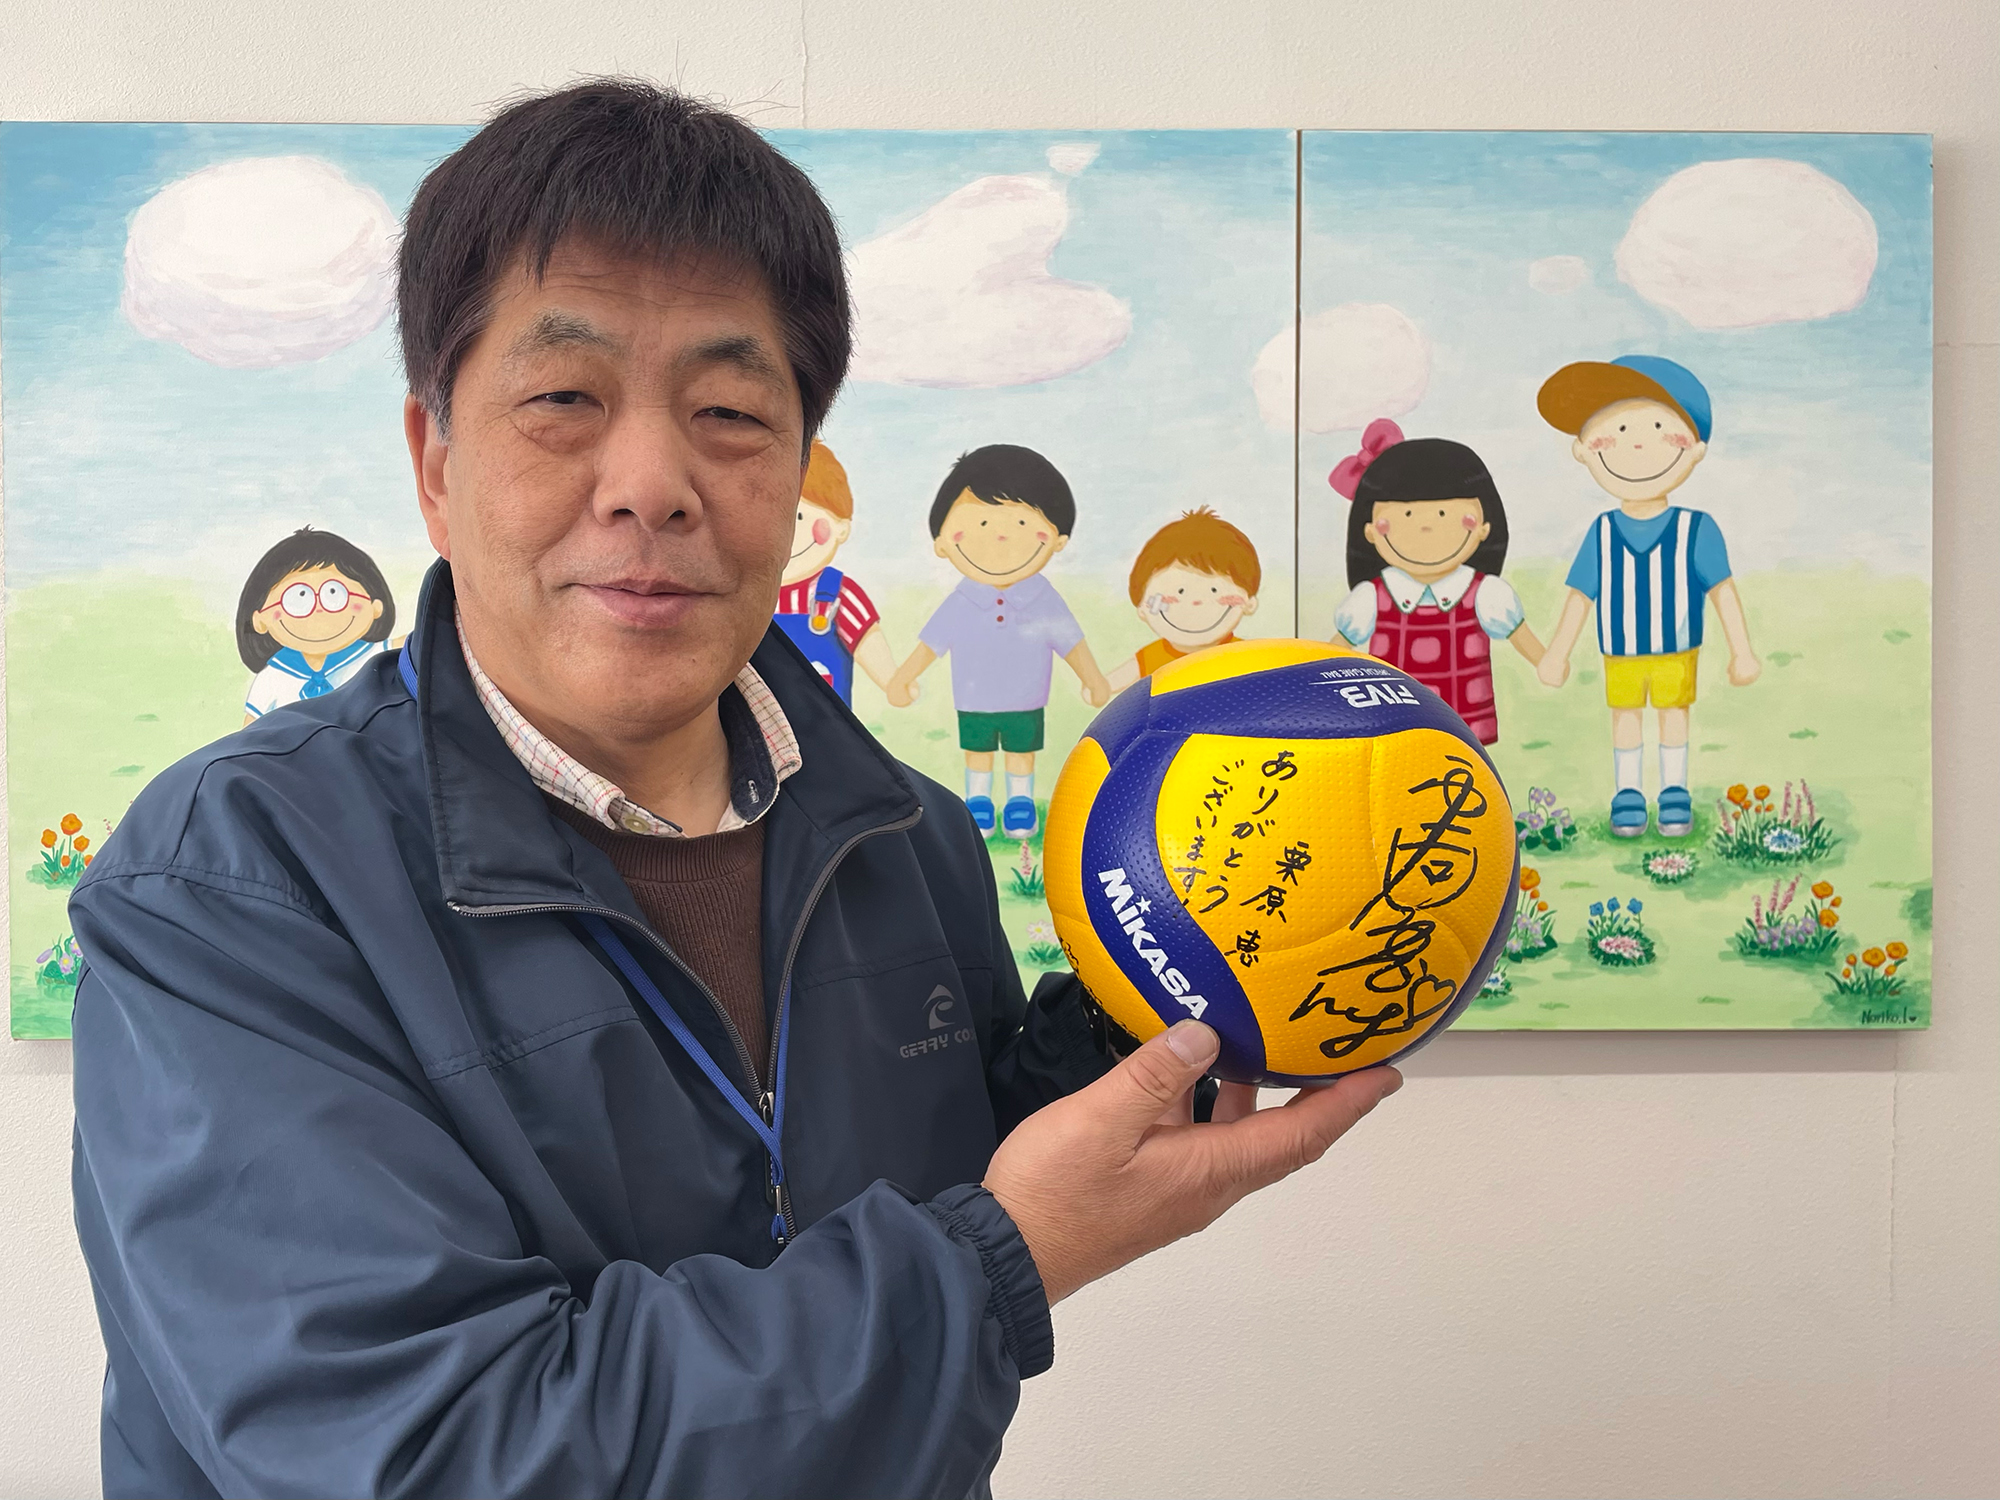 元プロバレーボール選手 栗原恵さんのサイン入りバレーボールを児童養護施設に寄付